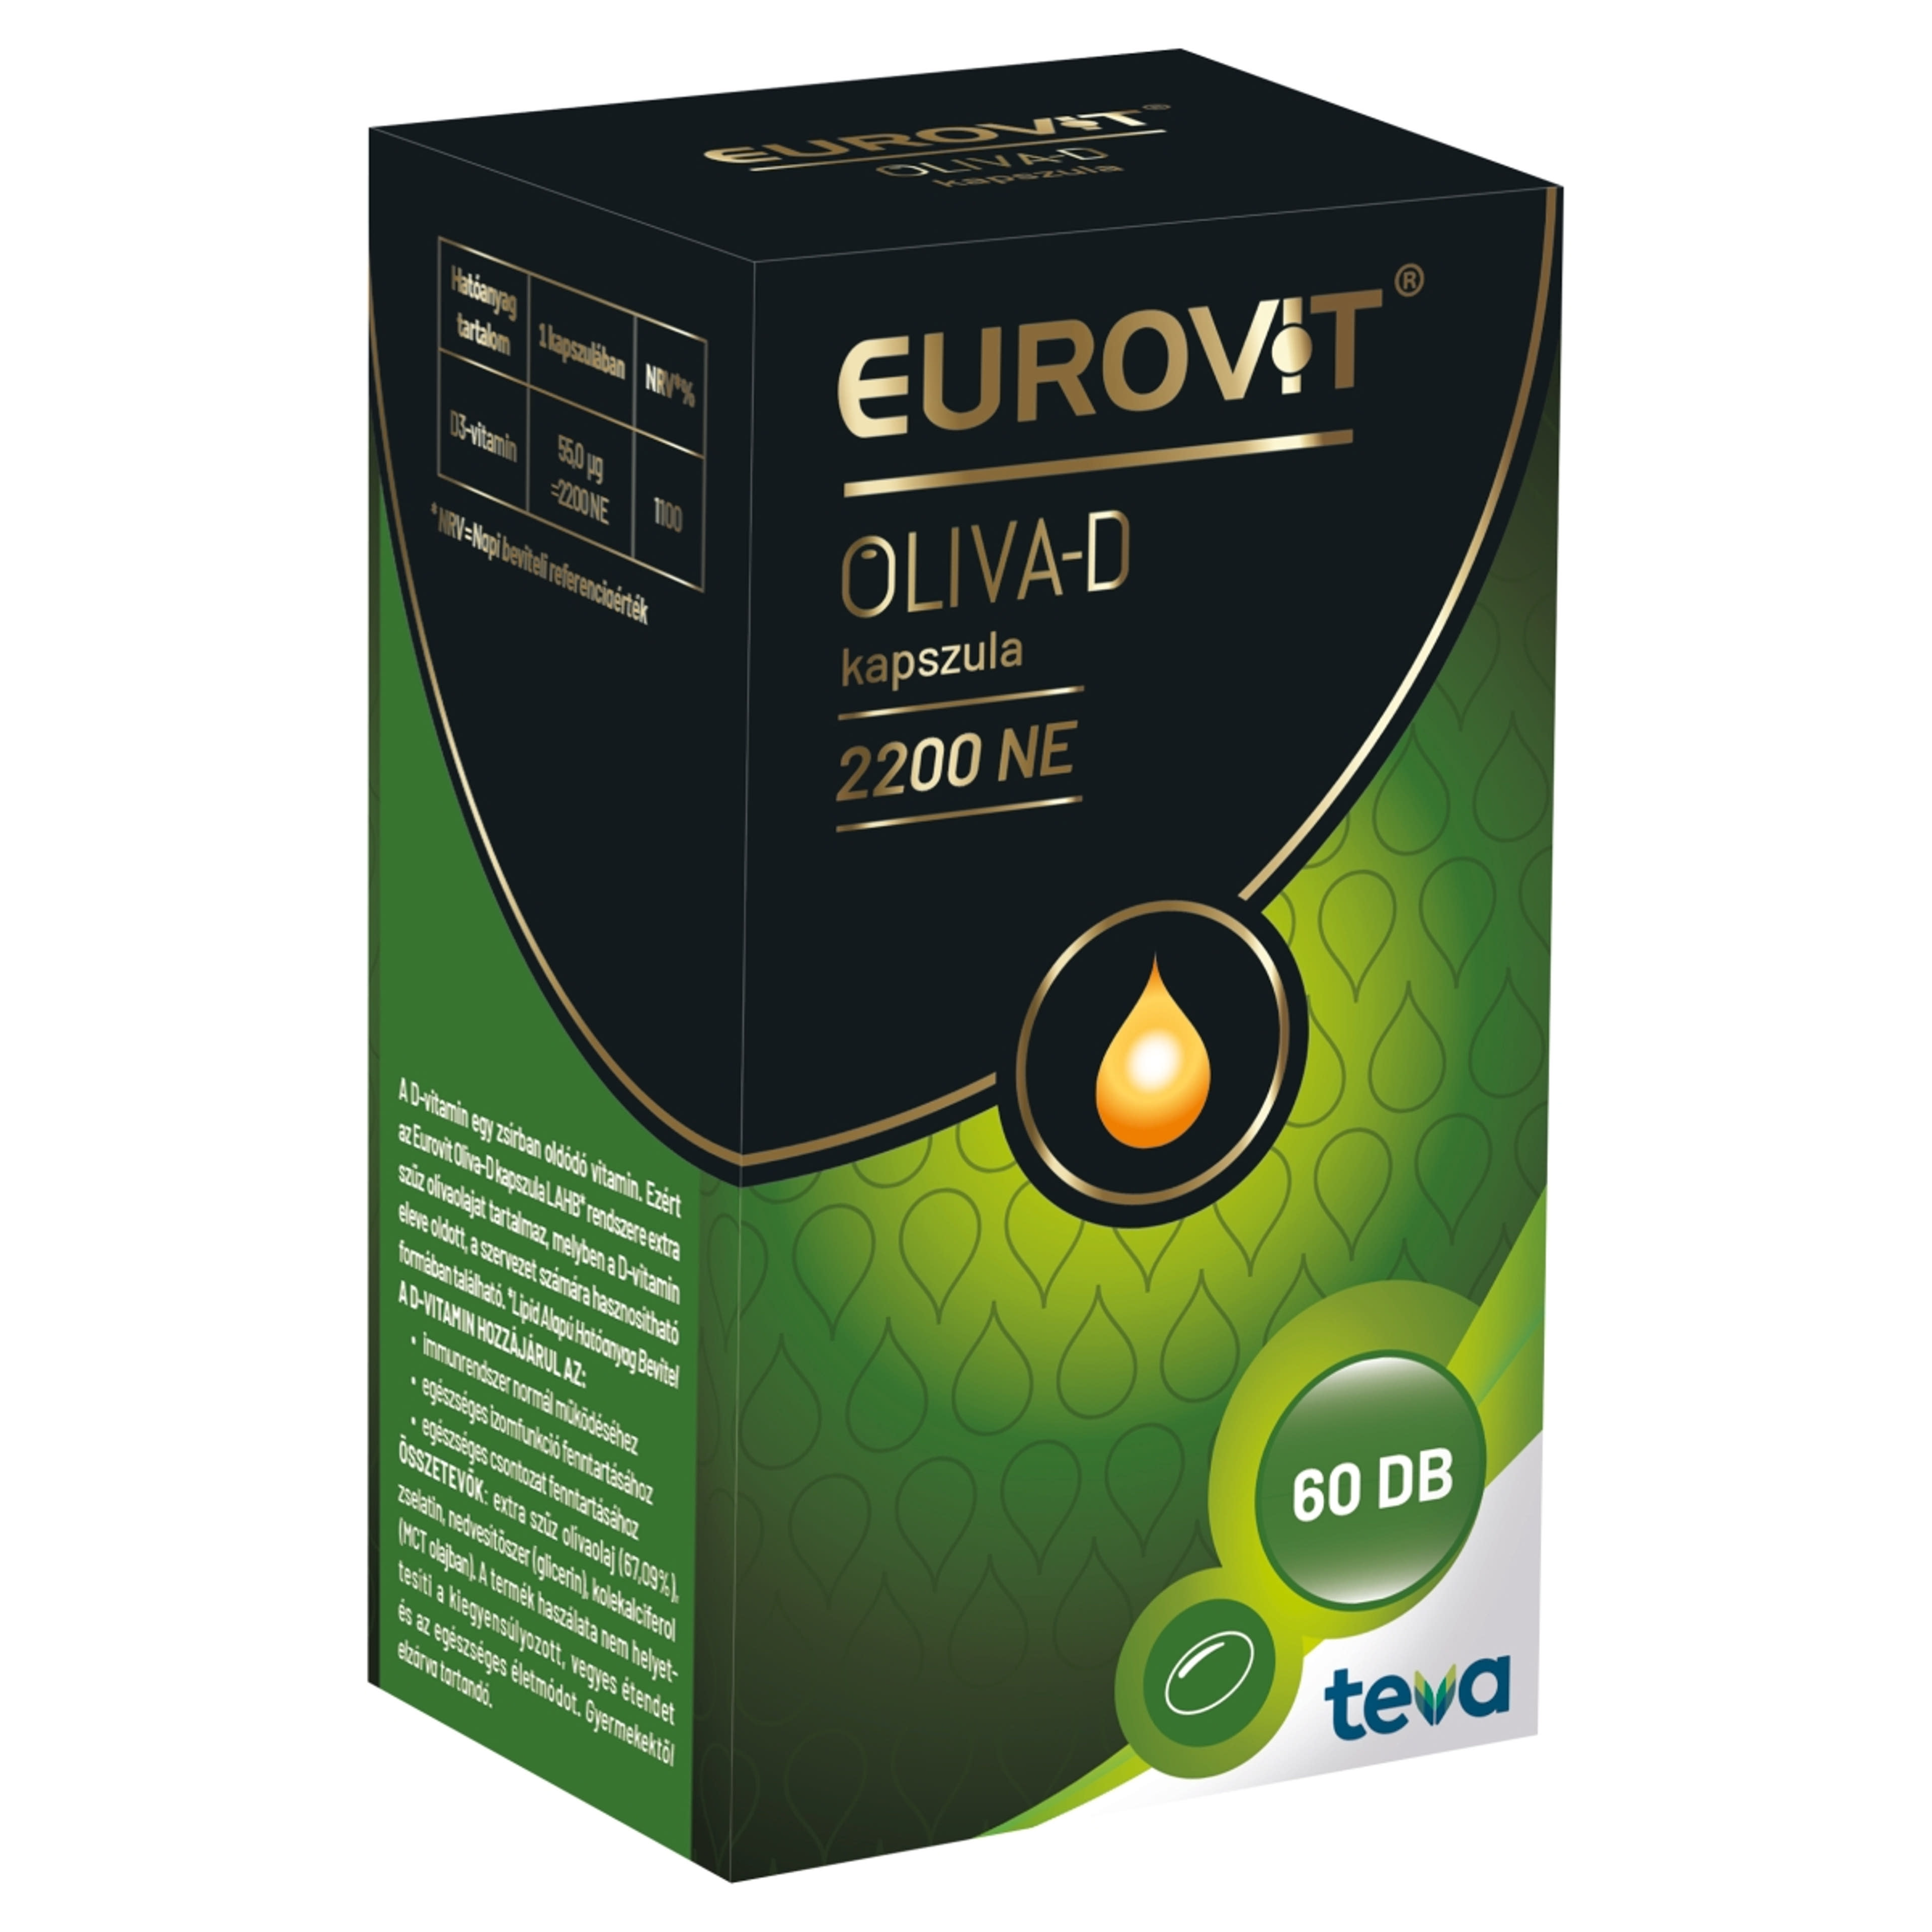 Eurovit oliva-d 2200Ne kapszula - 60 db-2